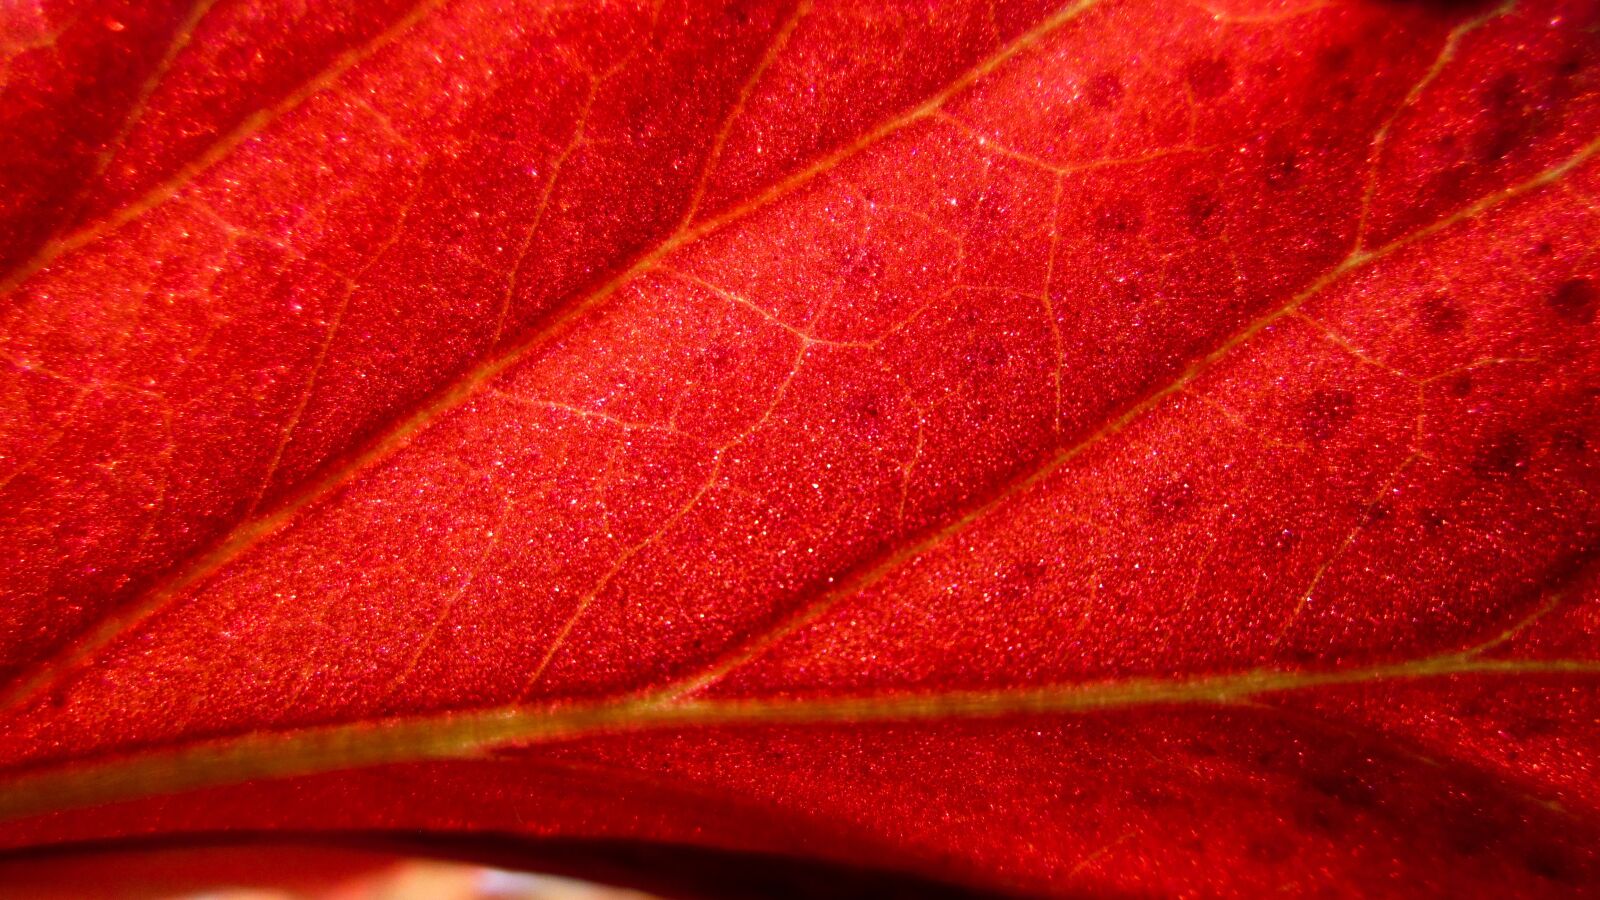 Canon PowerShot A810 sample photo. Plant, background, orange photography